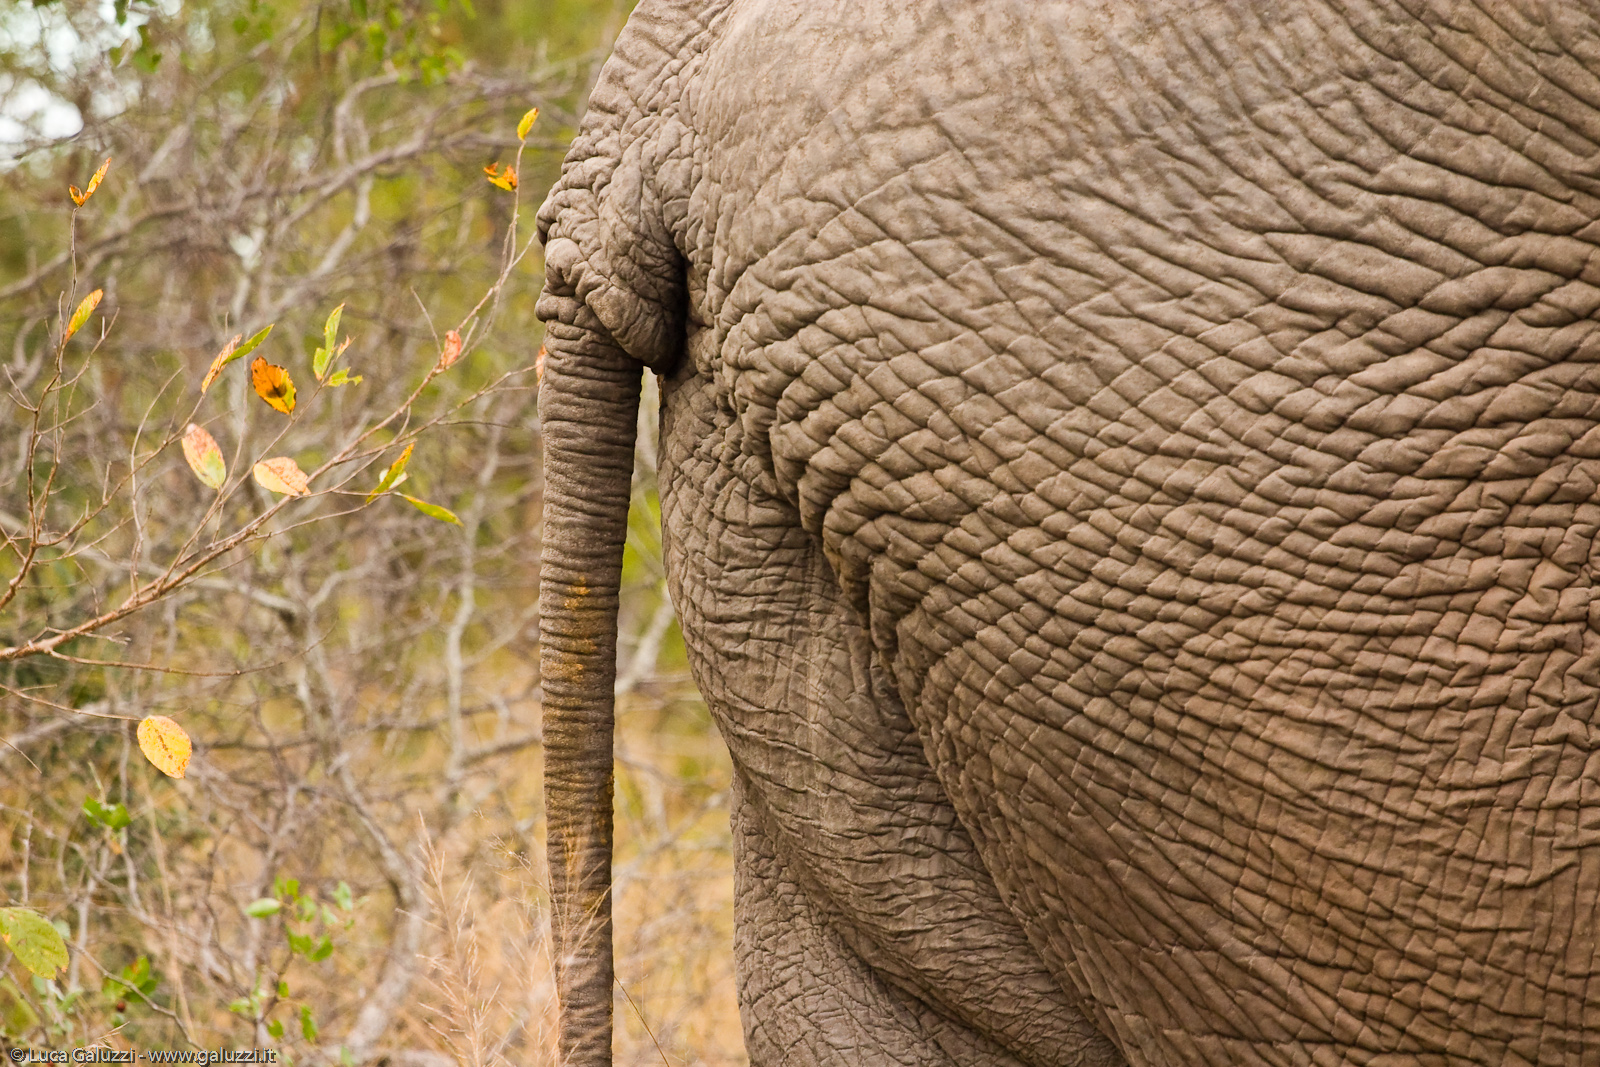 Gli elefanti sono chiamati pachidermi che significa animali dalla pelle spessa.La pelle dell´elefante è spessa fino a circa 2,5 centimetri attorno a molte parti del corpo.